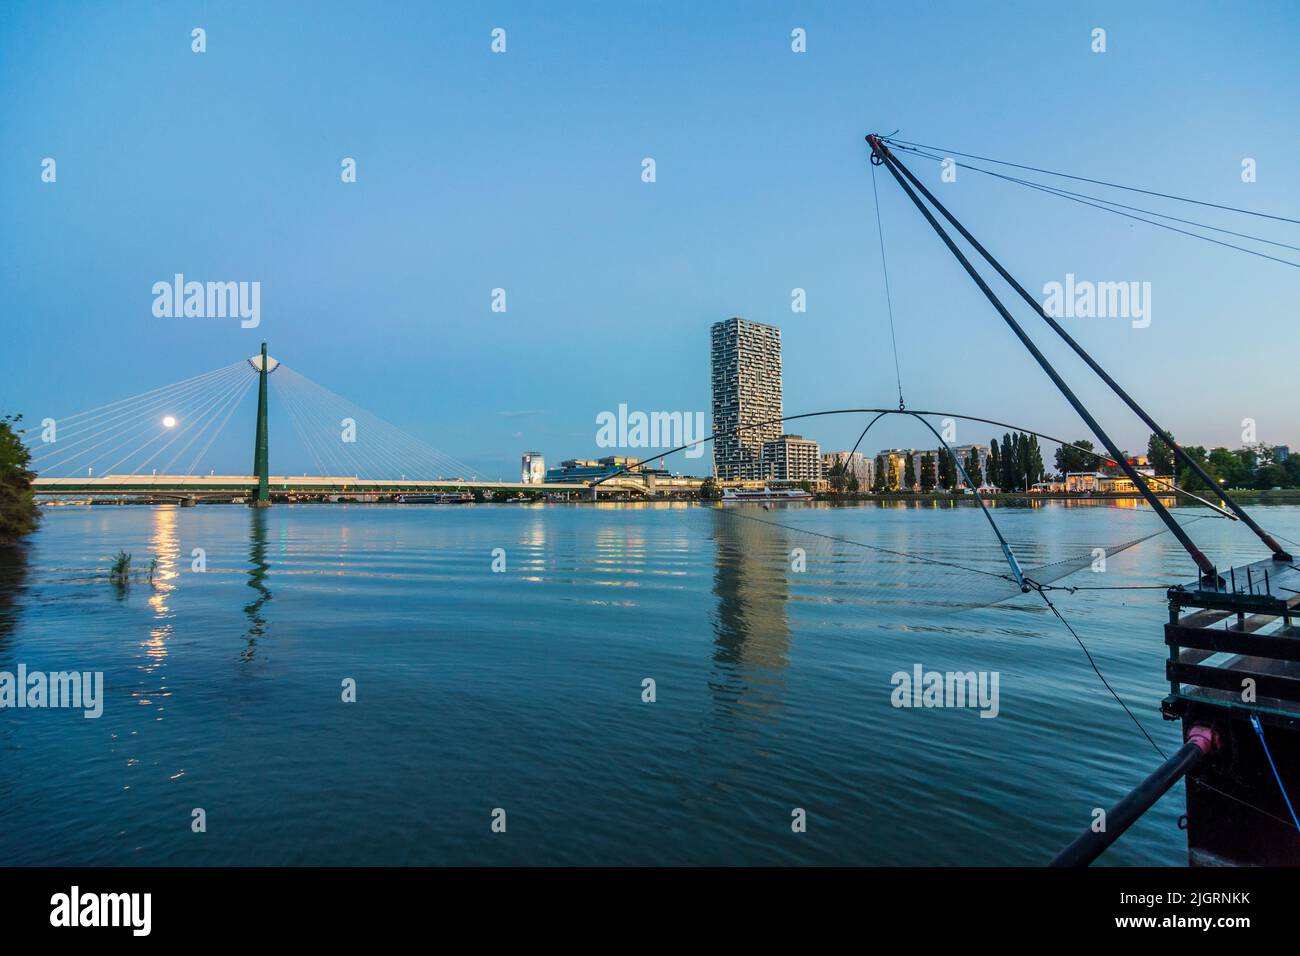 Wien, Vienne: rivière Donau (Danube), bateau Daubel avec filet de pêche, tour de la Marina, pont de métro Donaustadtbrücke, pleine lune, vue de Banque D'Images